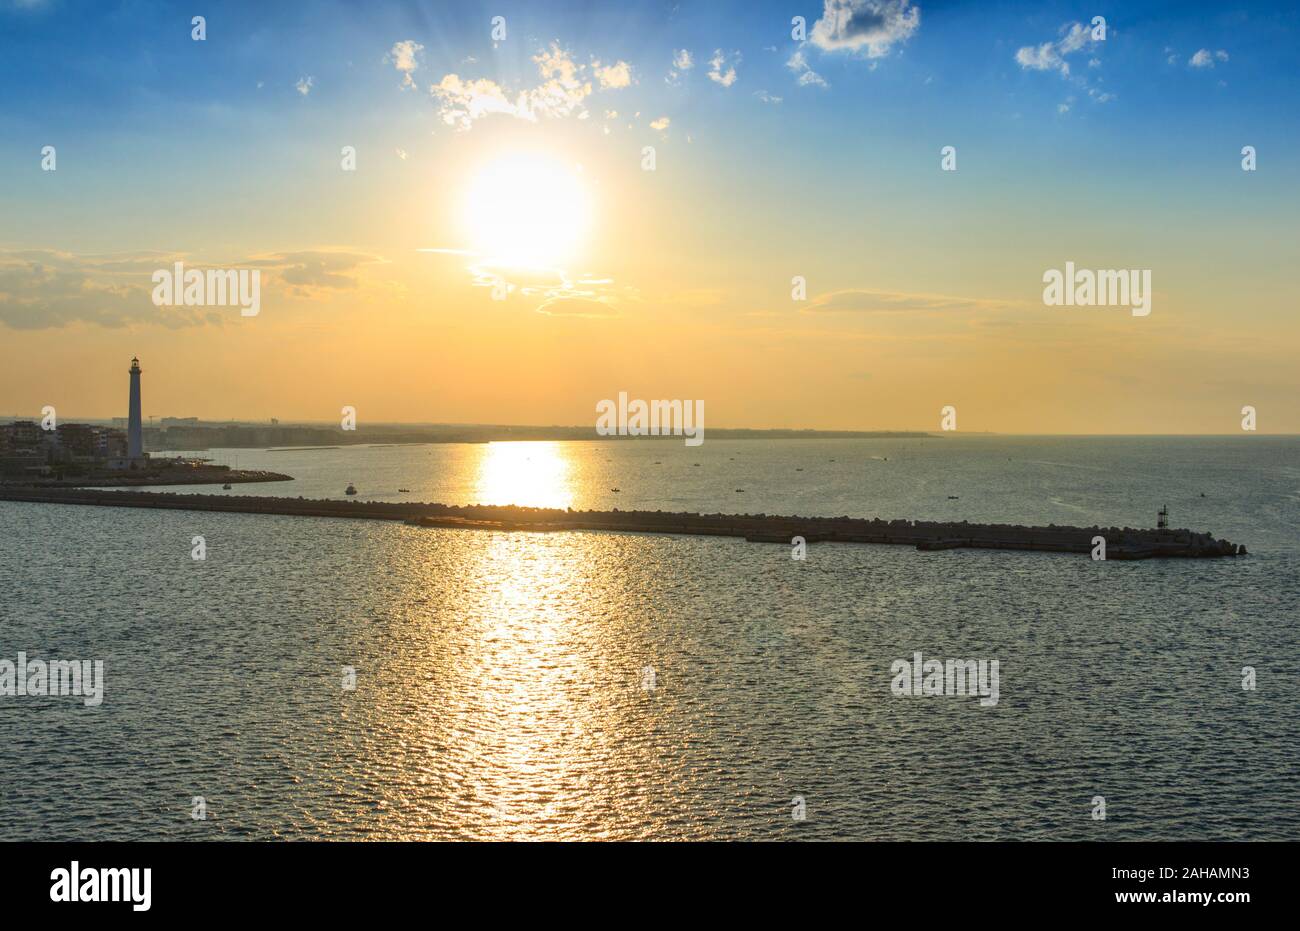 Hafen von Bari bei Sonnenuntergang: Der Pier und der Leuchtturm. Sonnenuntergang am Meer: Küste Apulien. Stockfoto